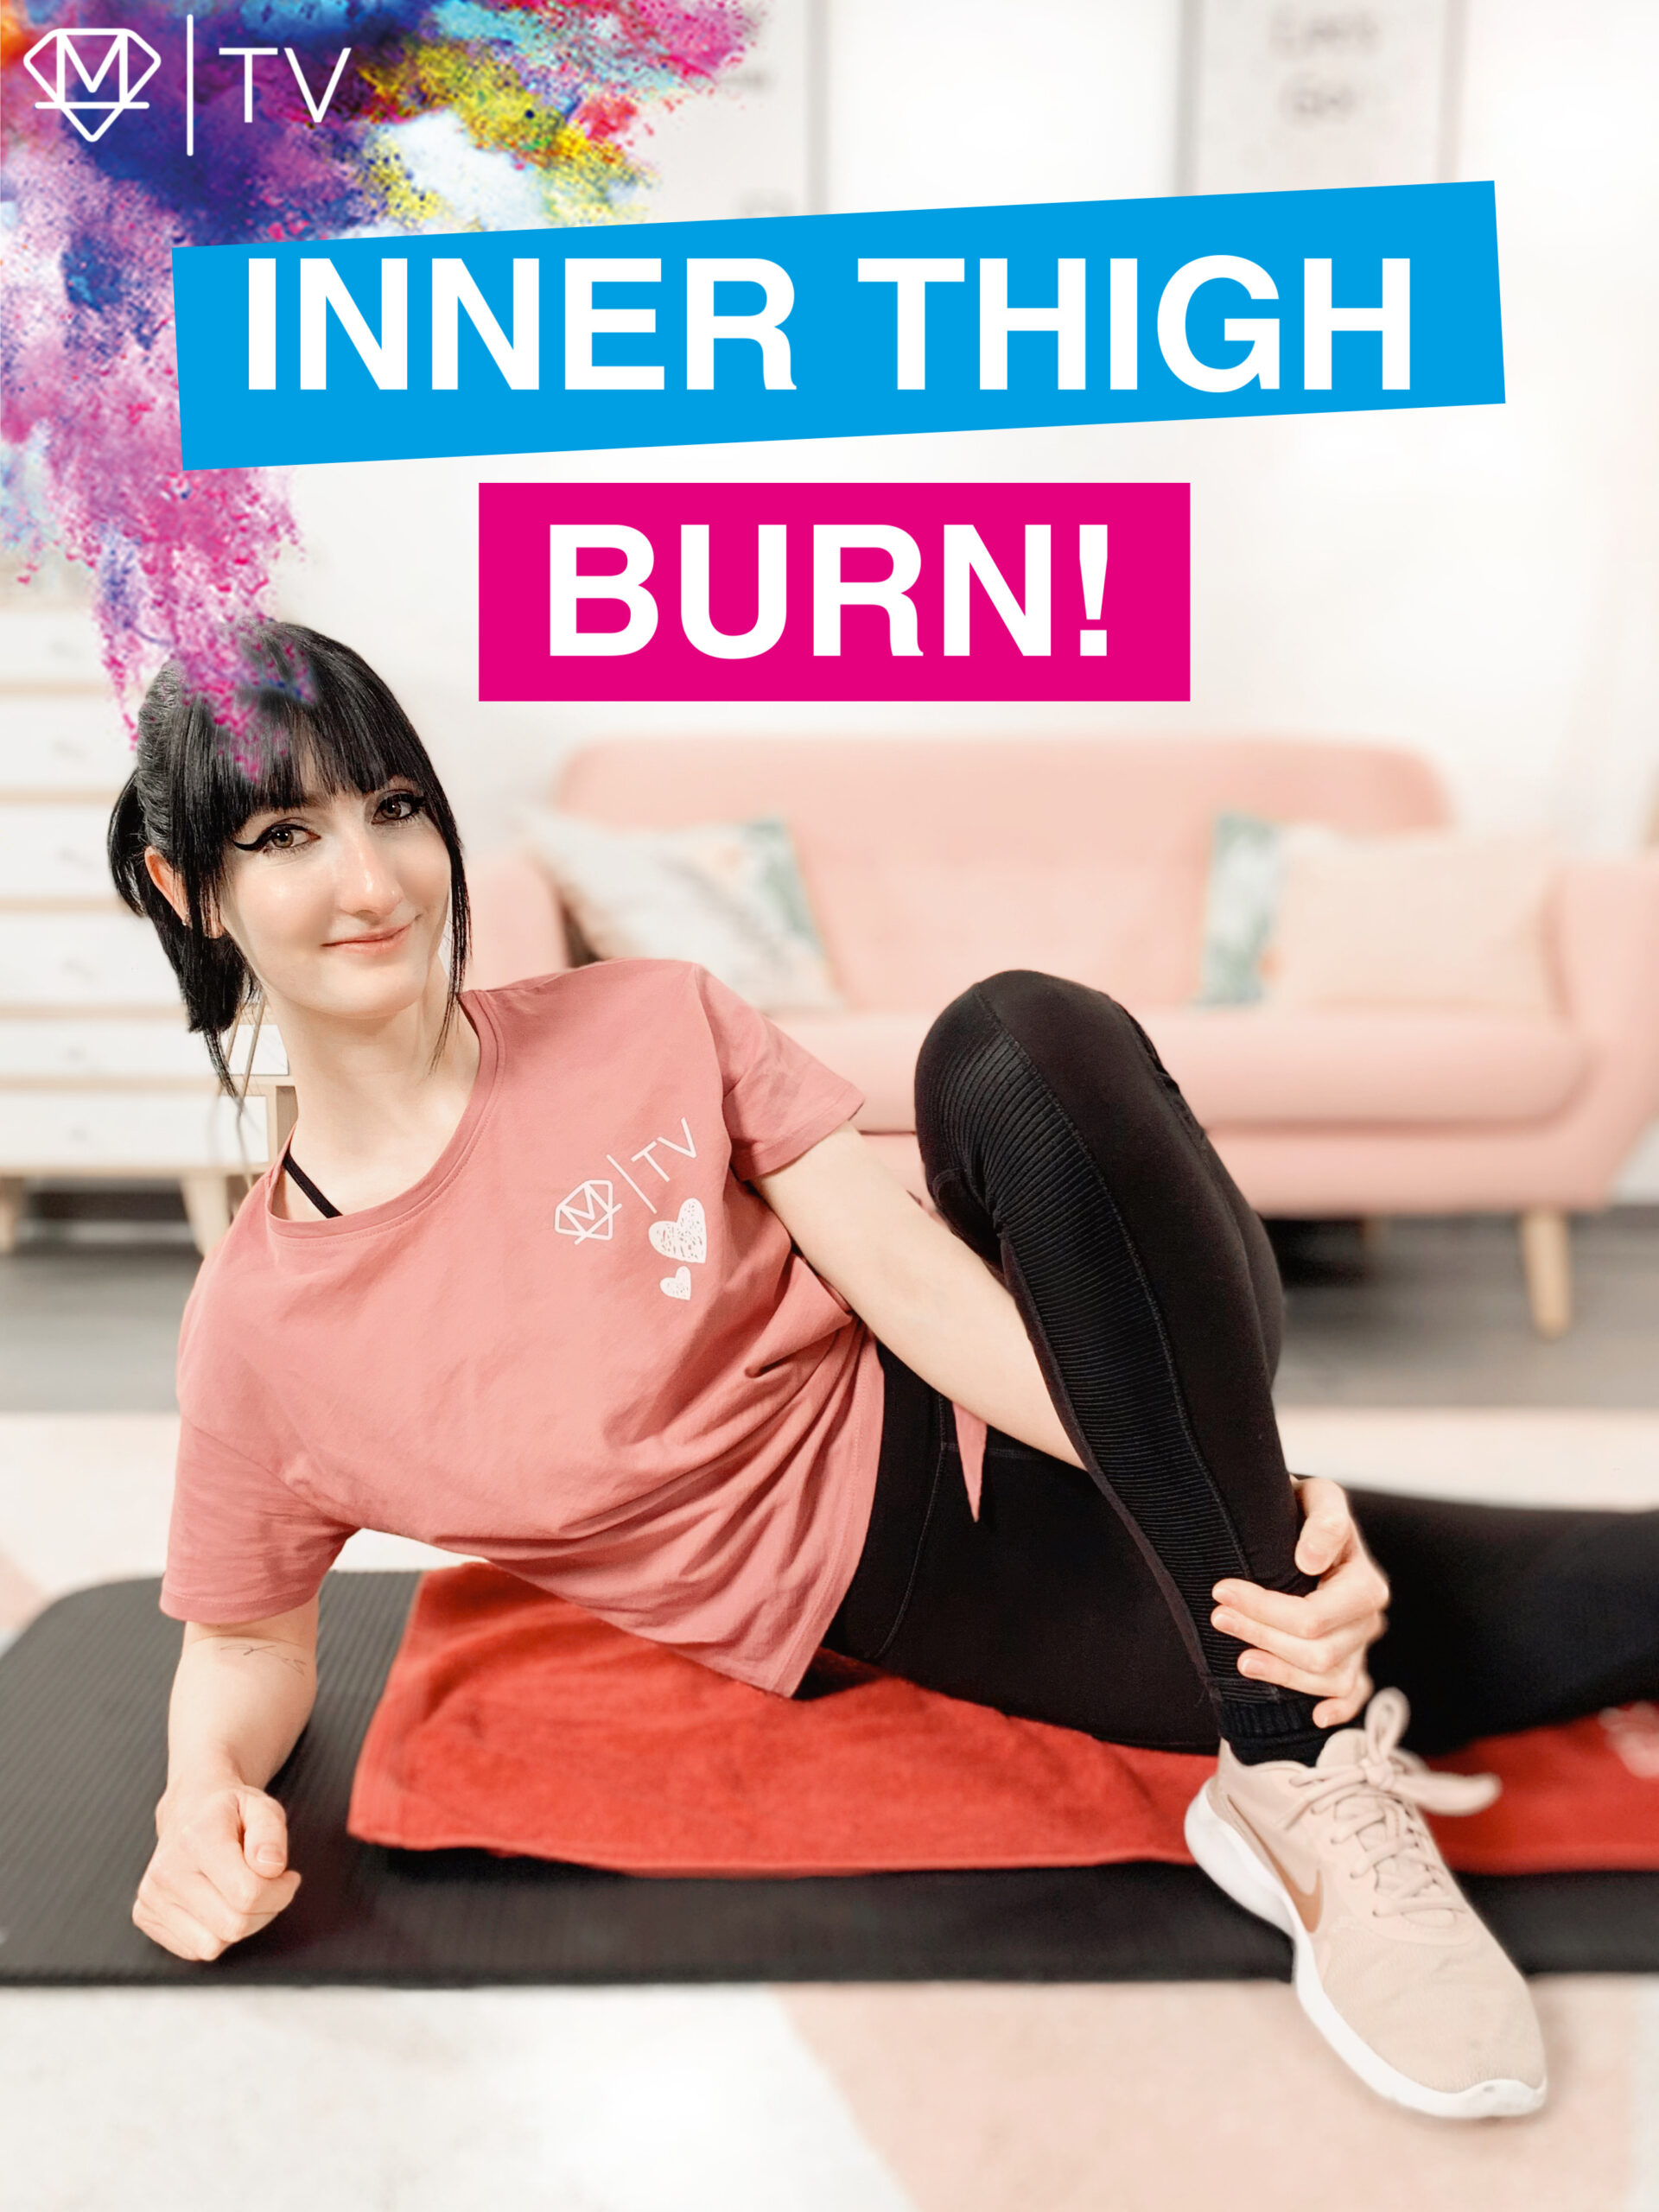 Inner Thigh Burn!